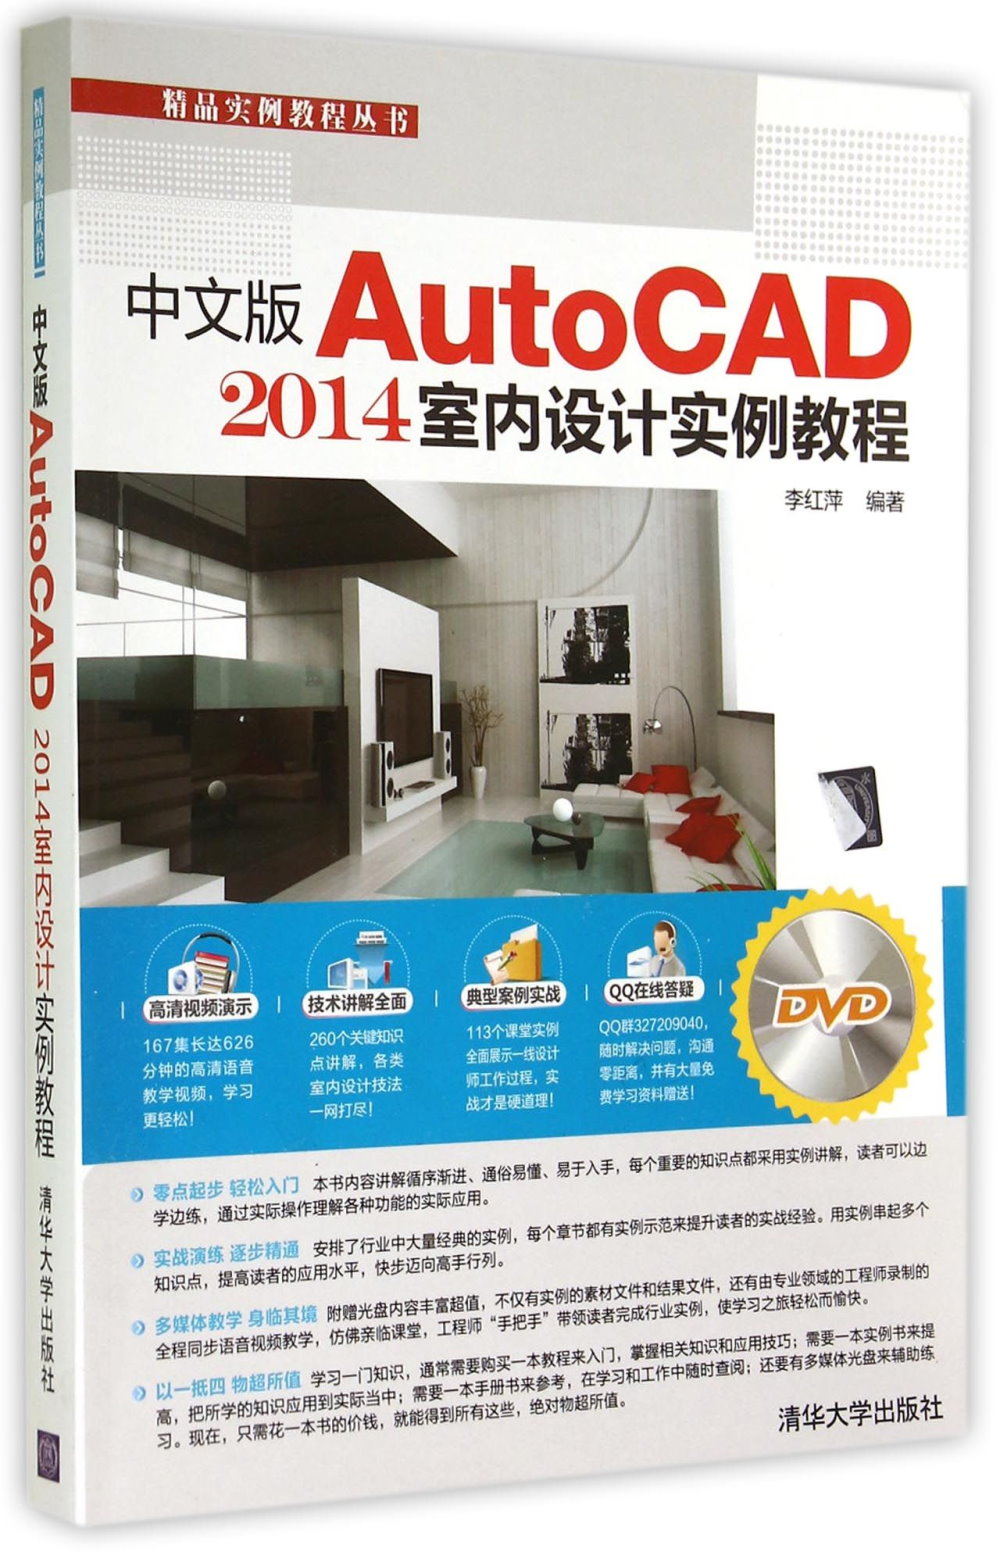 中文版AutoCAD 2014室內設計實例教程